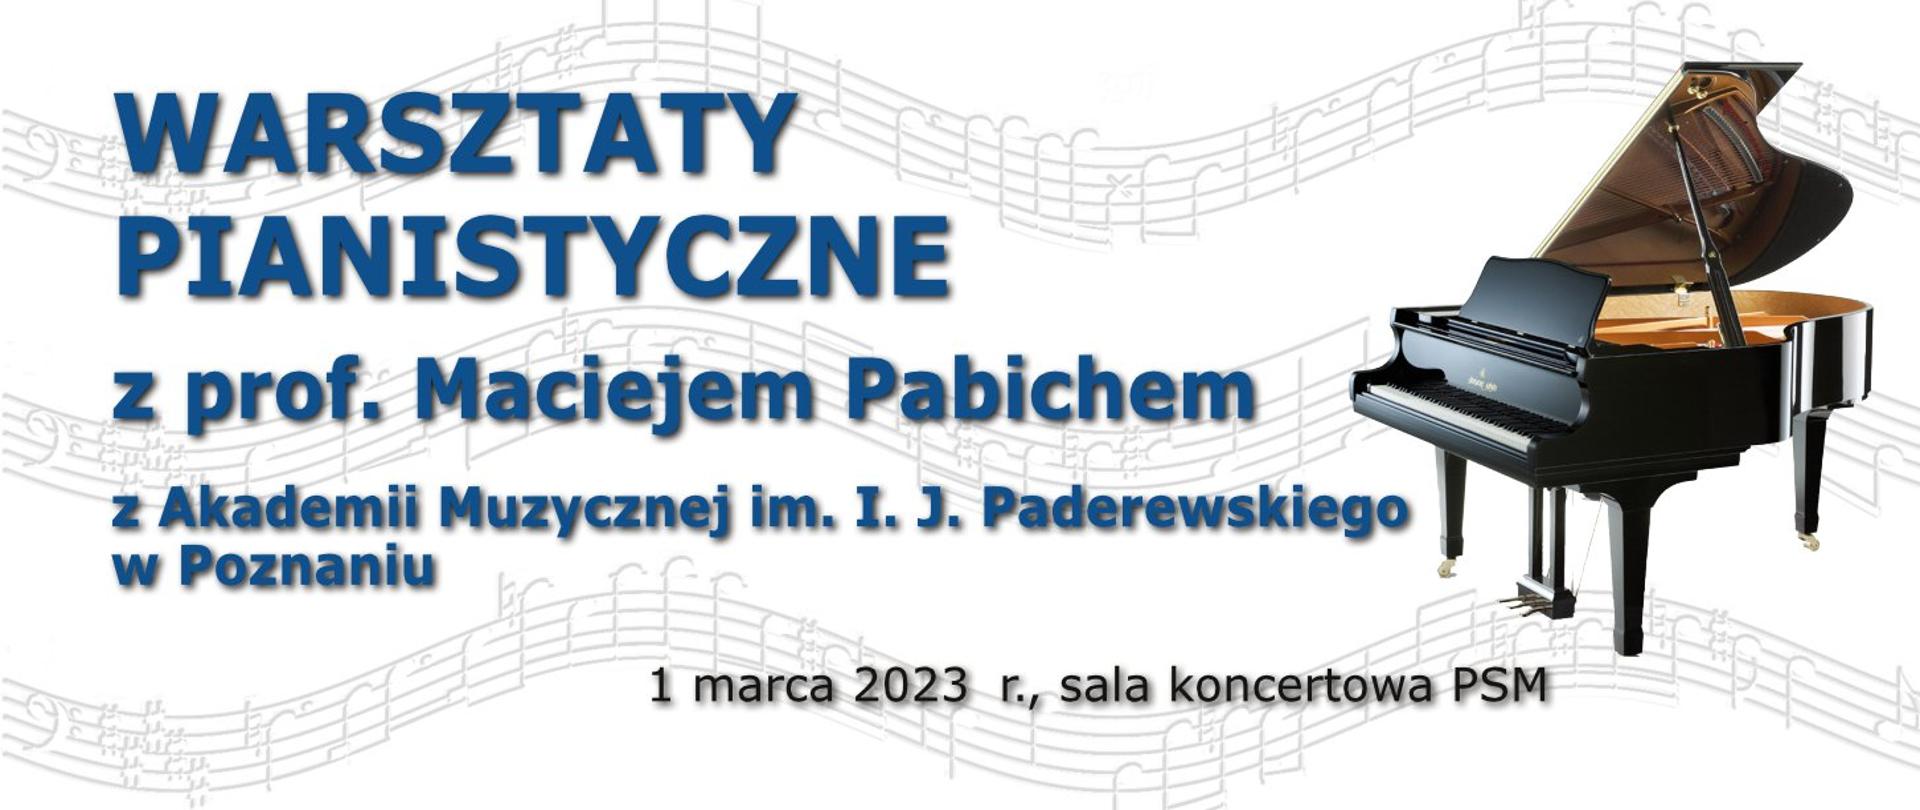 Plakat z informacją o warsztatach pianistycznych z prof. M. Pabichem. Na tle wijącego się tekstu nutowego granatowy tekst, po prawej zdjęcie fortepianu, na dole data.